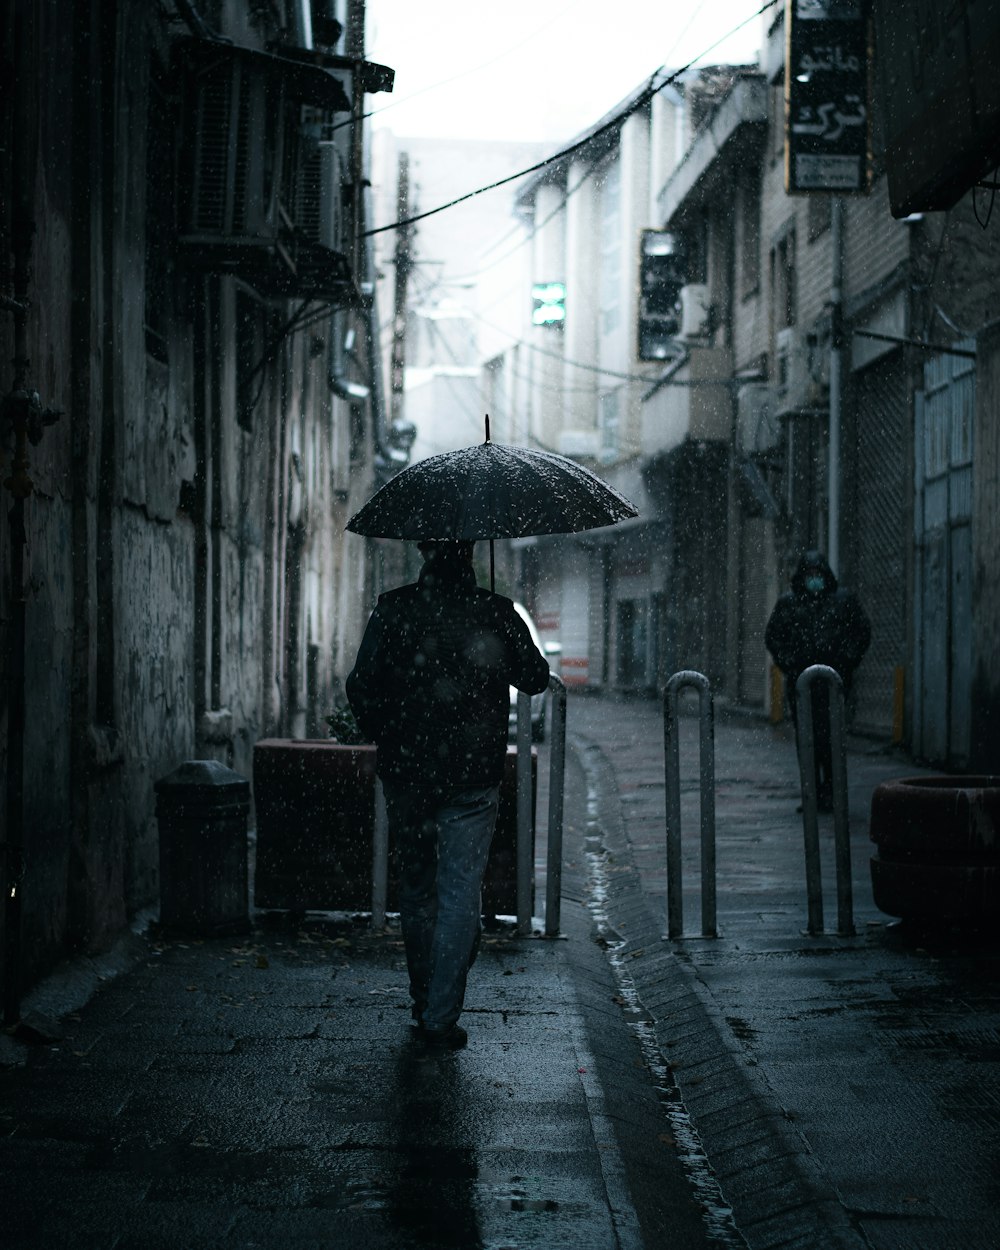 검은 재킷과 바지를 입은 사람이 낮 동안 보도를 걷고 있는 우산을 들고 있다